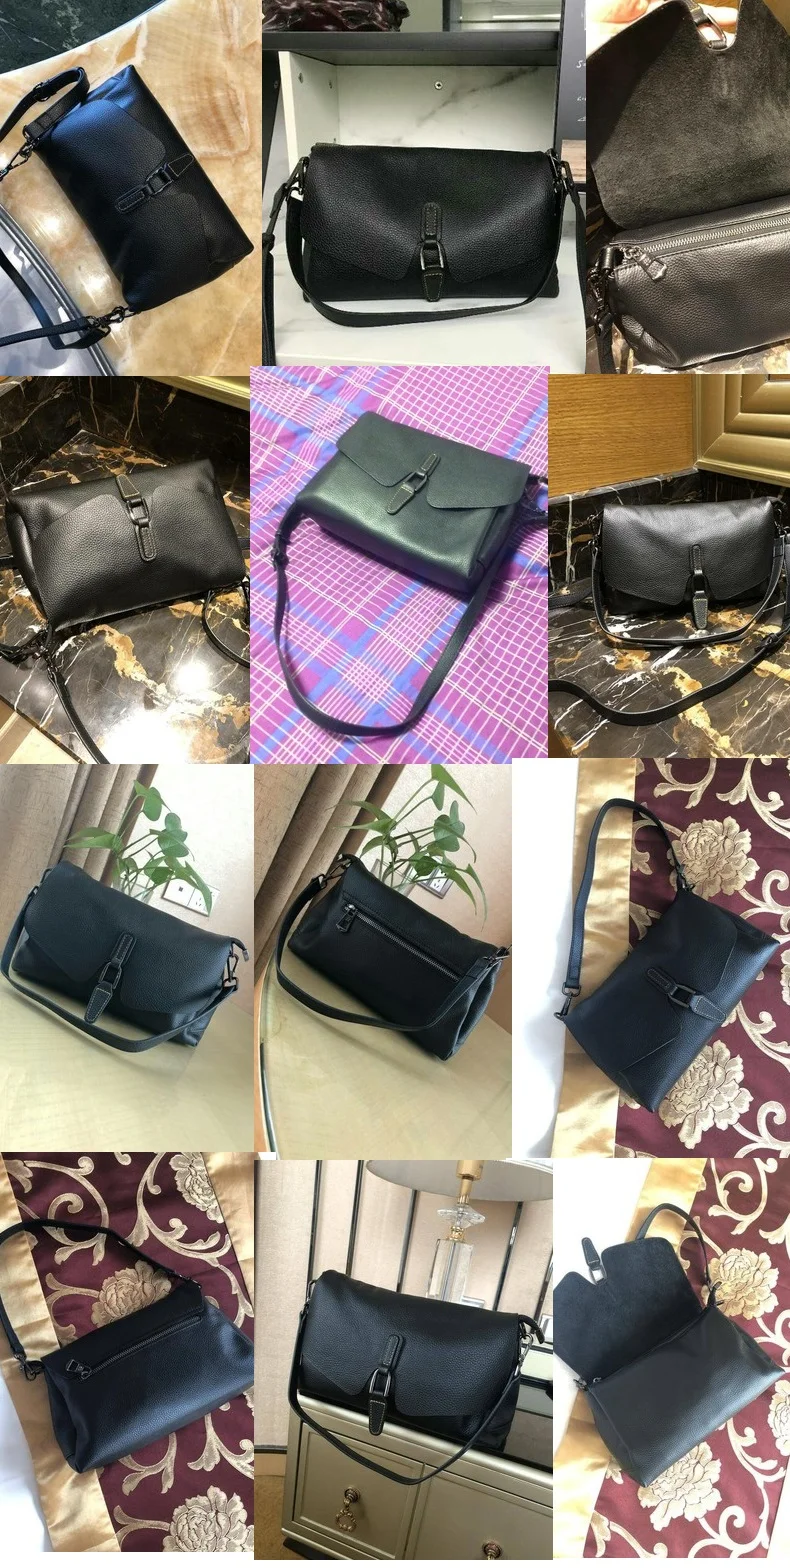 ZOOLER, женская сумка через плечо, роскошные сумки, женские сумки на плечо, дизайнерские, натуральная кожа, черная сумка-мессенджер, для девушек# LD200